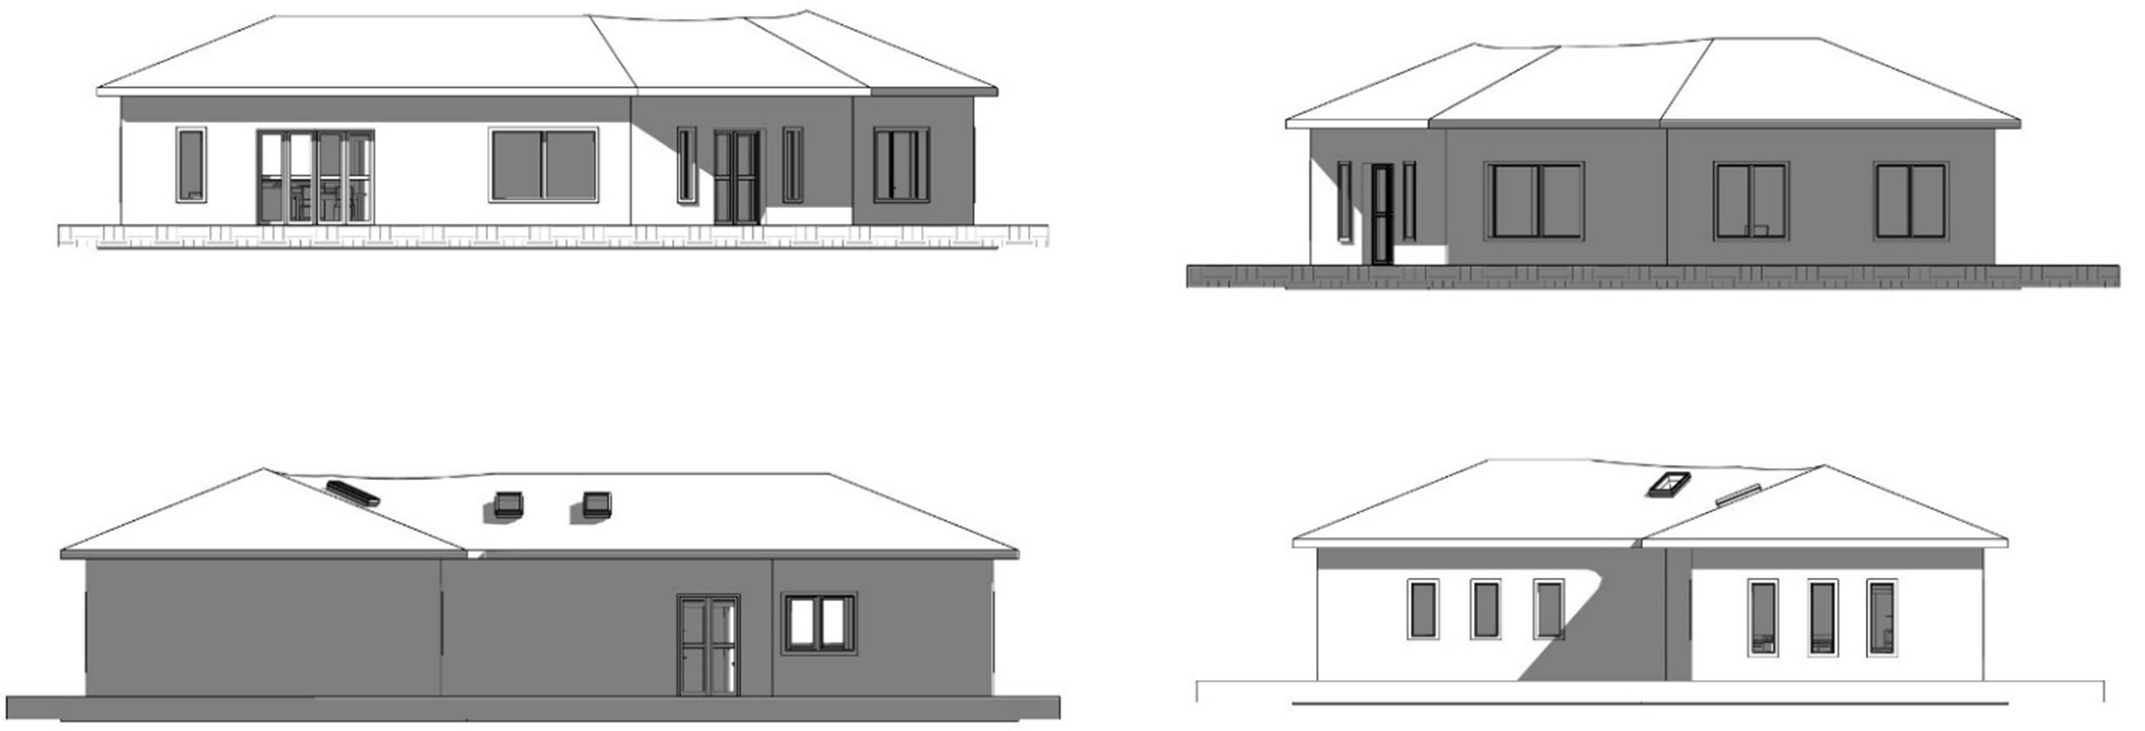 Ilustración 12 – Elaboración propia. Alzados sur (superior izquierda), este (superior derecha), norte (inferior izquierda) y oeste (inferior derecha)